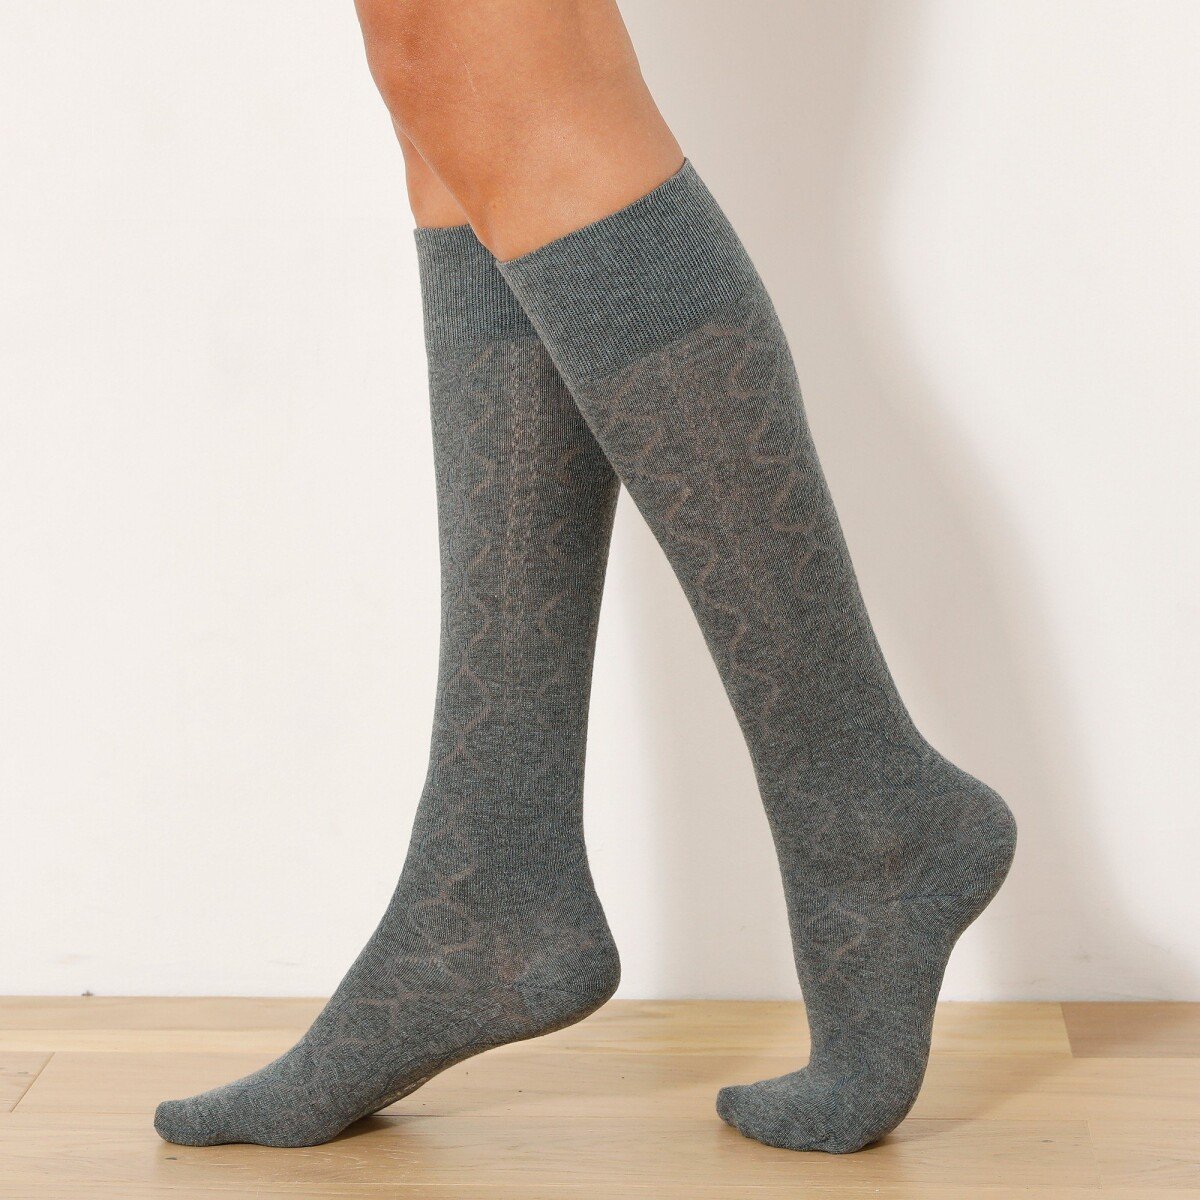 Blancheporte Sada 2 párů vysokých ponožek s copánkovým vzorem béžováantracitová 3538